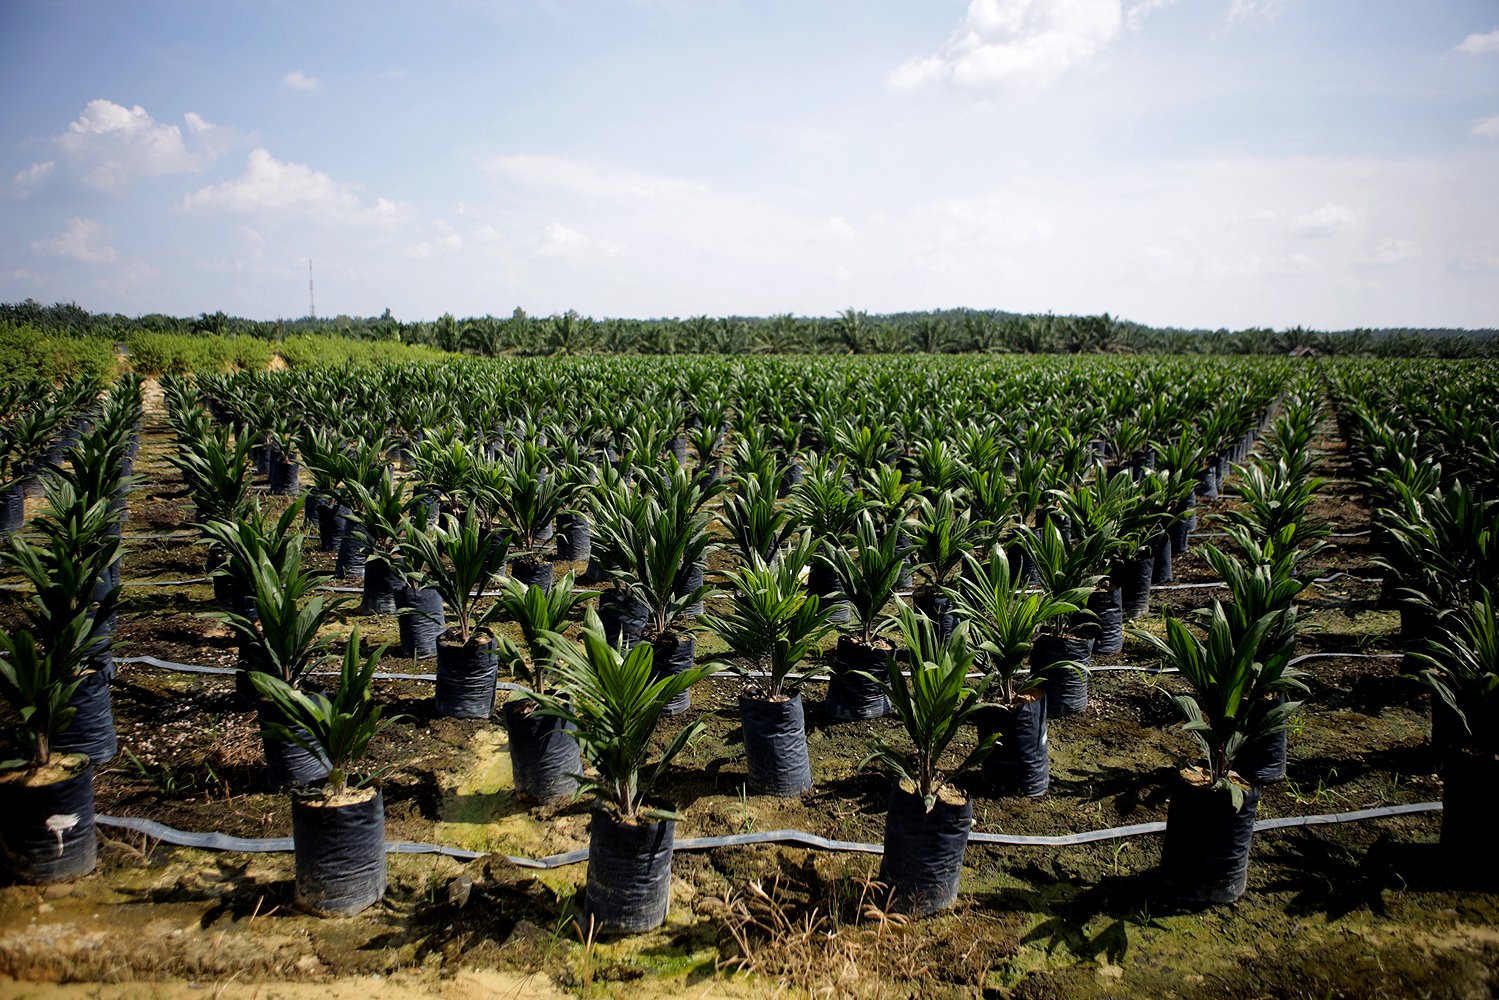 Kebun pembibitan kelapa sawit di Riau.